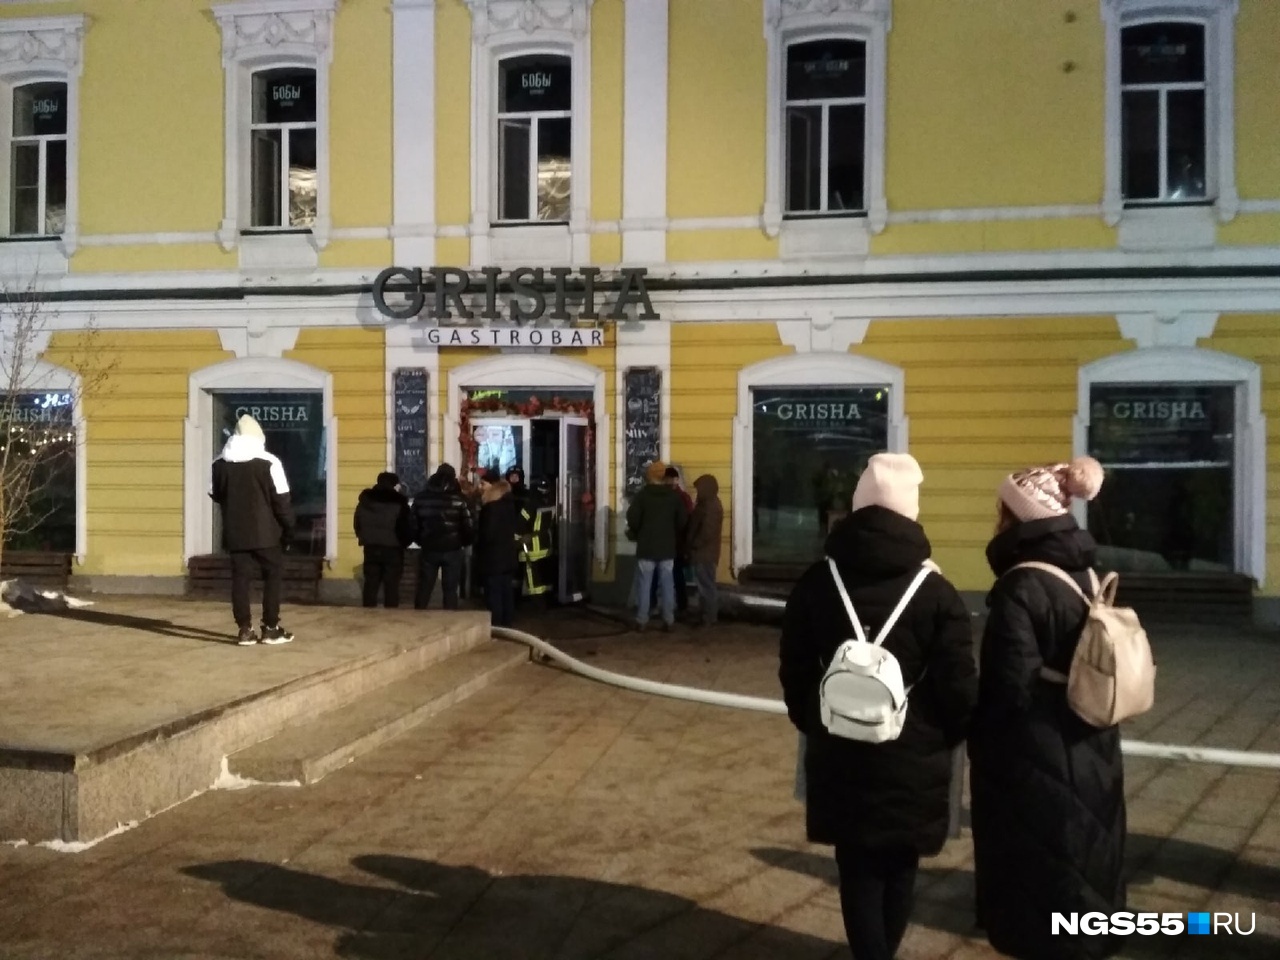 Гастропаб GRISHA пришлось закрыть на выходные после пожара в историческом здании на Ленина